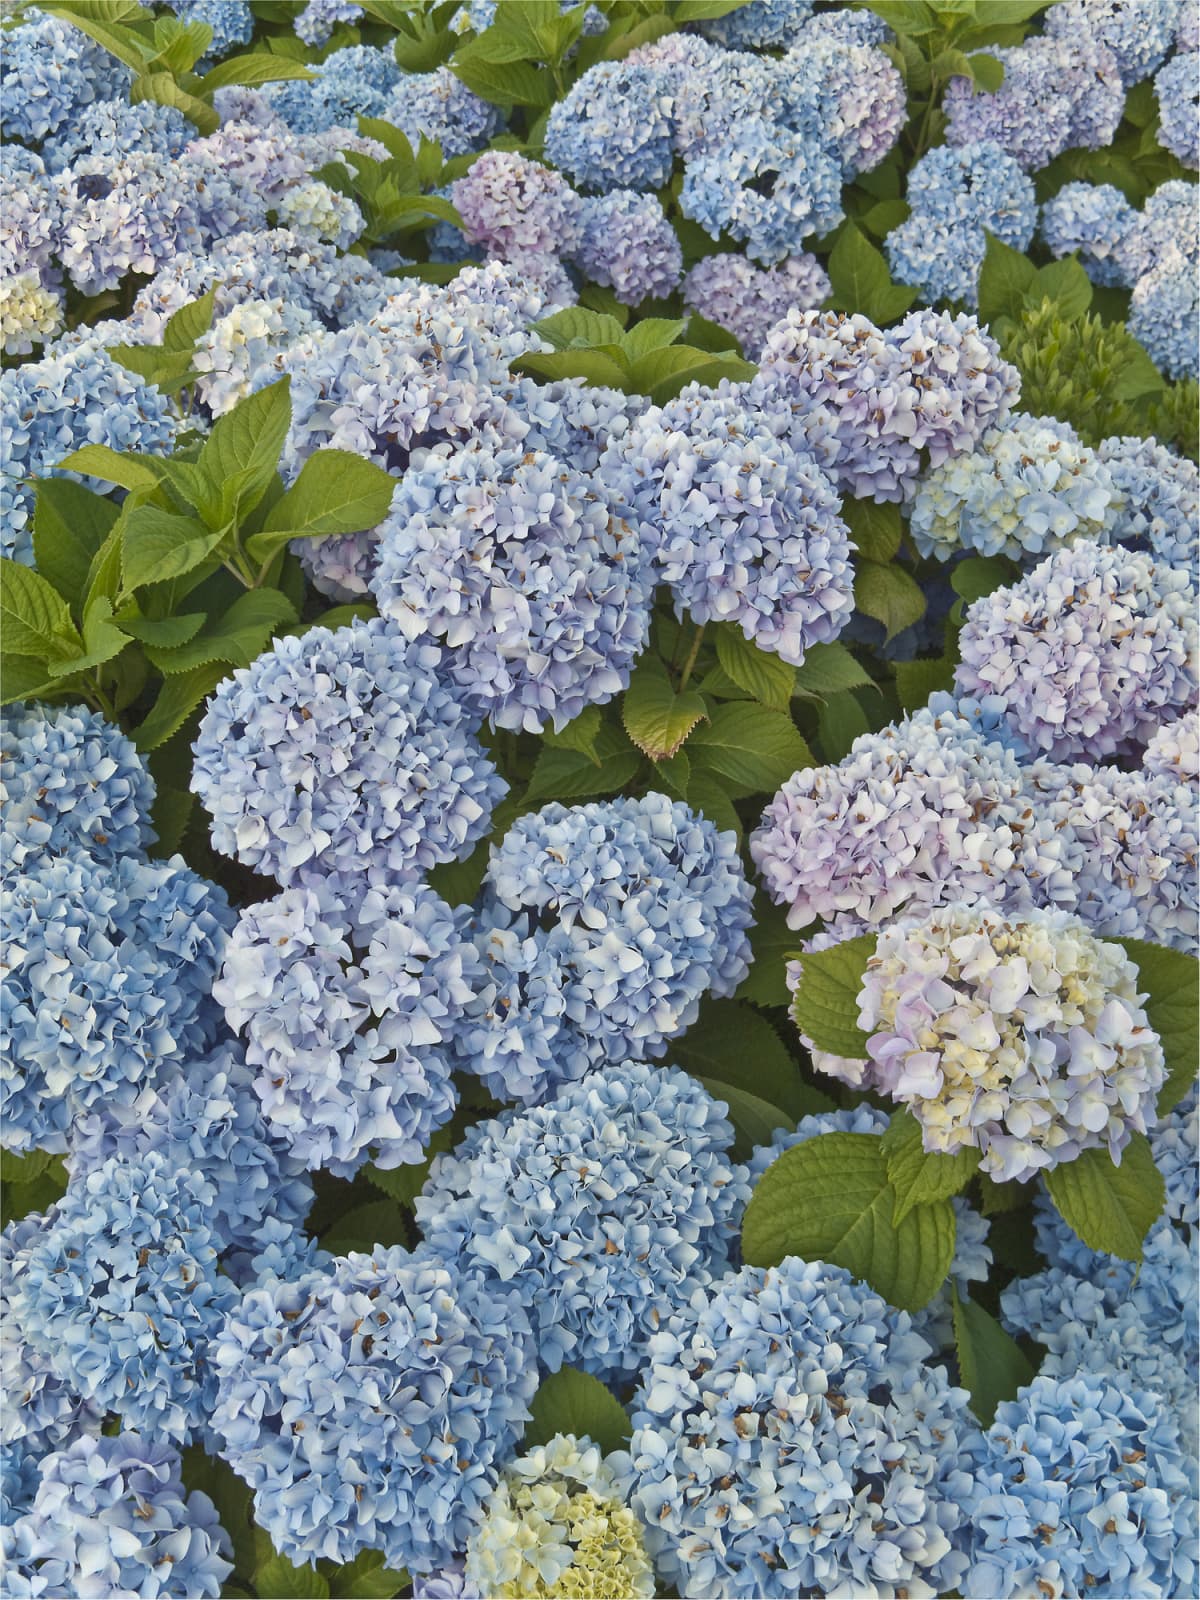 Blue hydrangeas in bloom